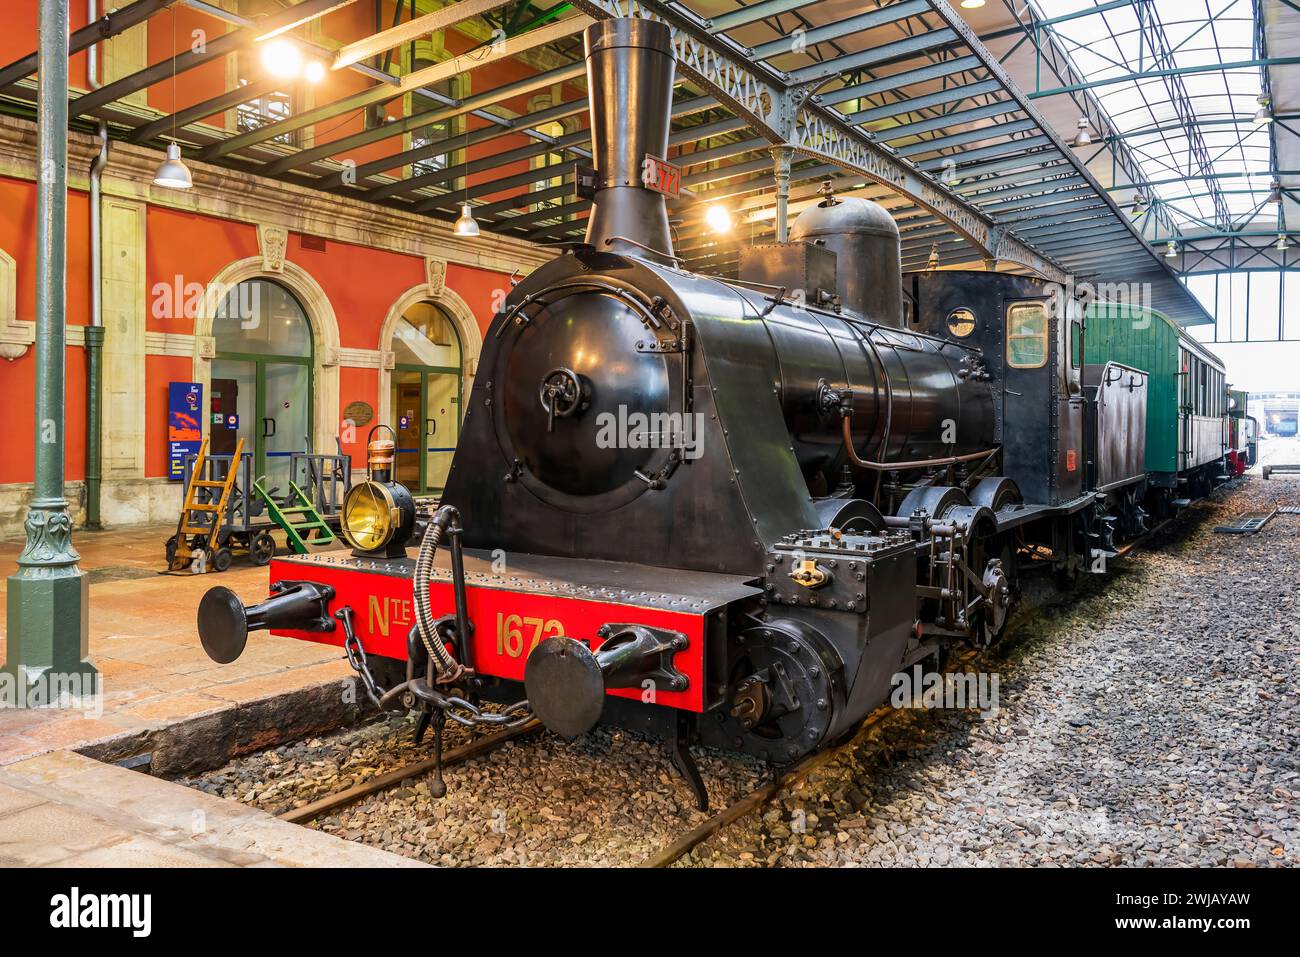 Asturias Railway Museum (Museo del Ferrocarril de Asturias), Gijon, Asturias, Spain Stock Photo